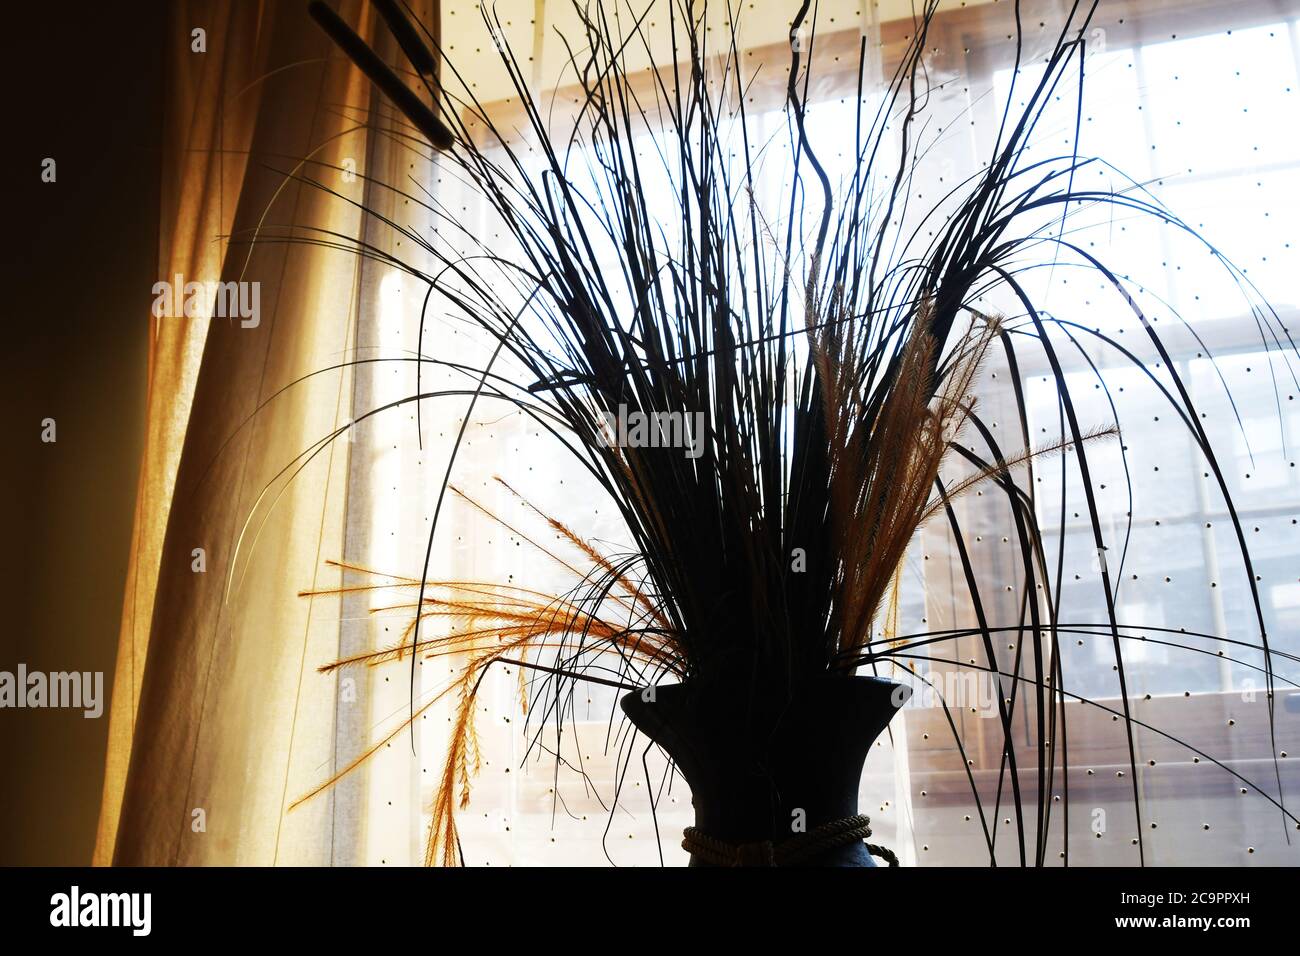 WOHNBEREICH: An einem hellen und sonnigen Tag sitzt eine Strohpflanze in einer hohen schwarzen Steinvase in der Nähe der Fenster eines Wohnhauses. Stockfoto